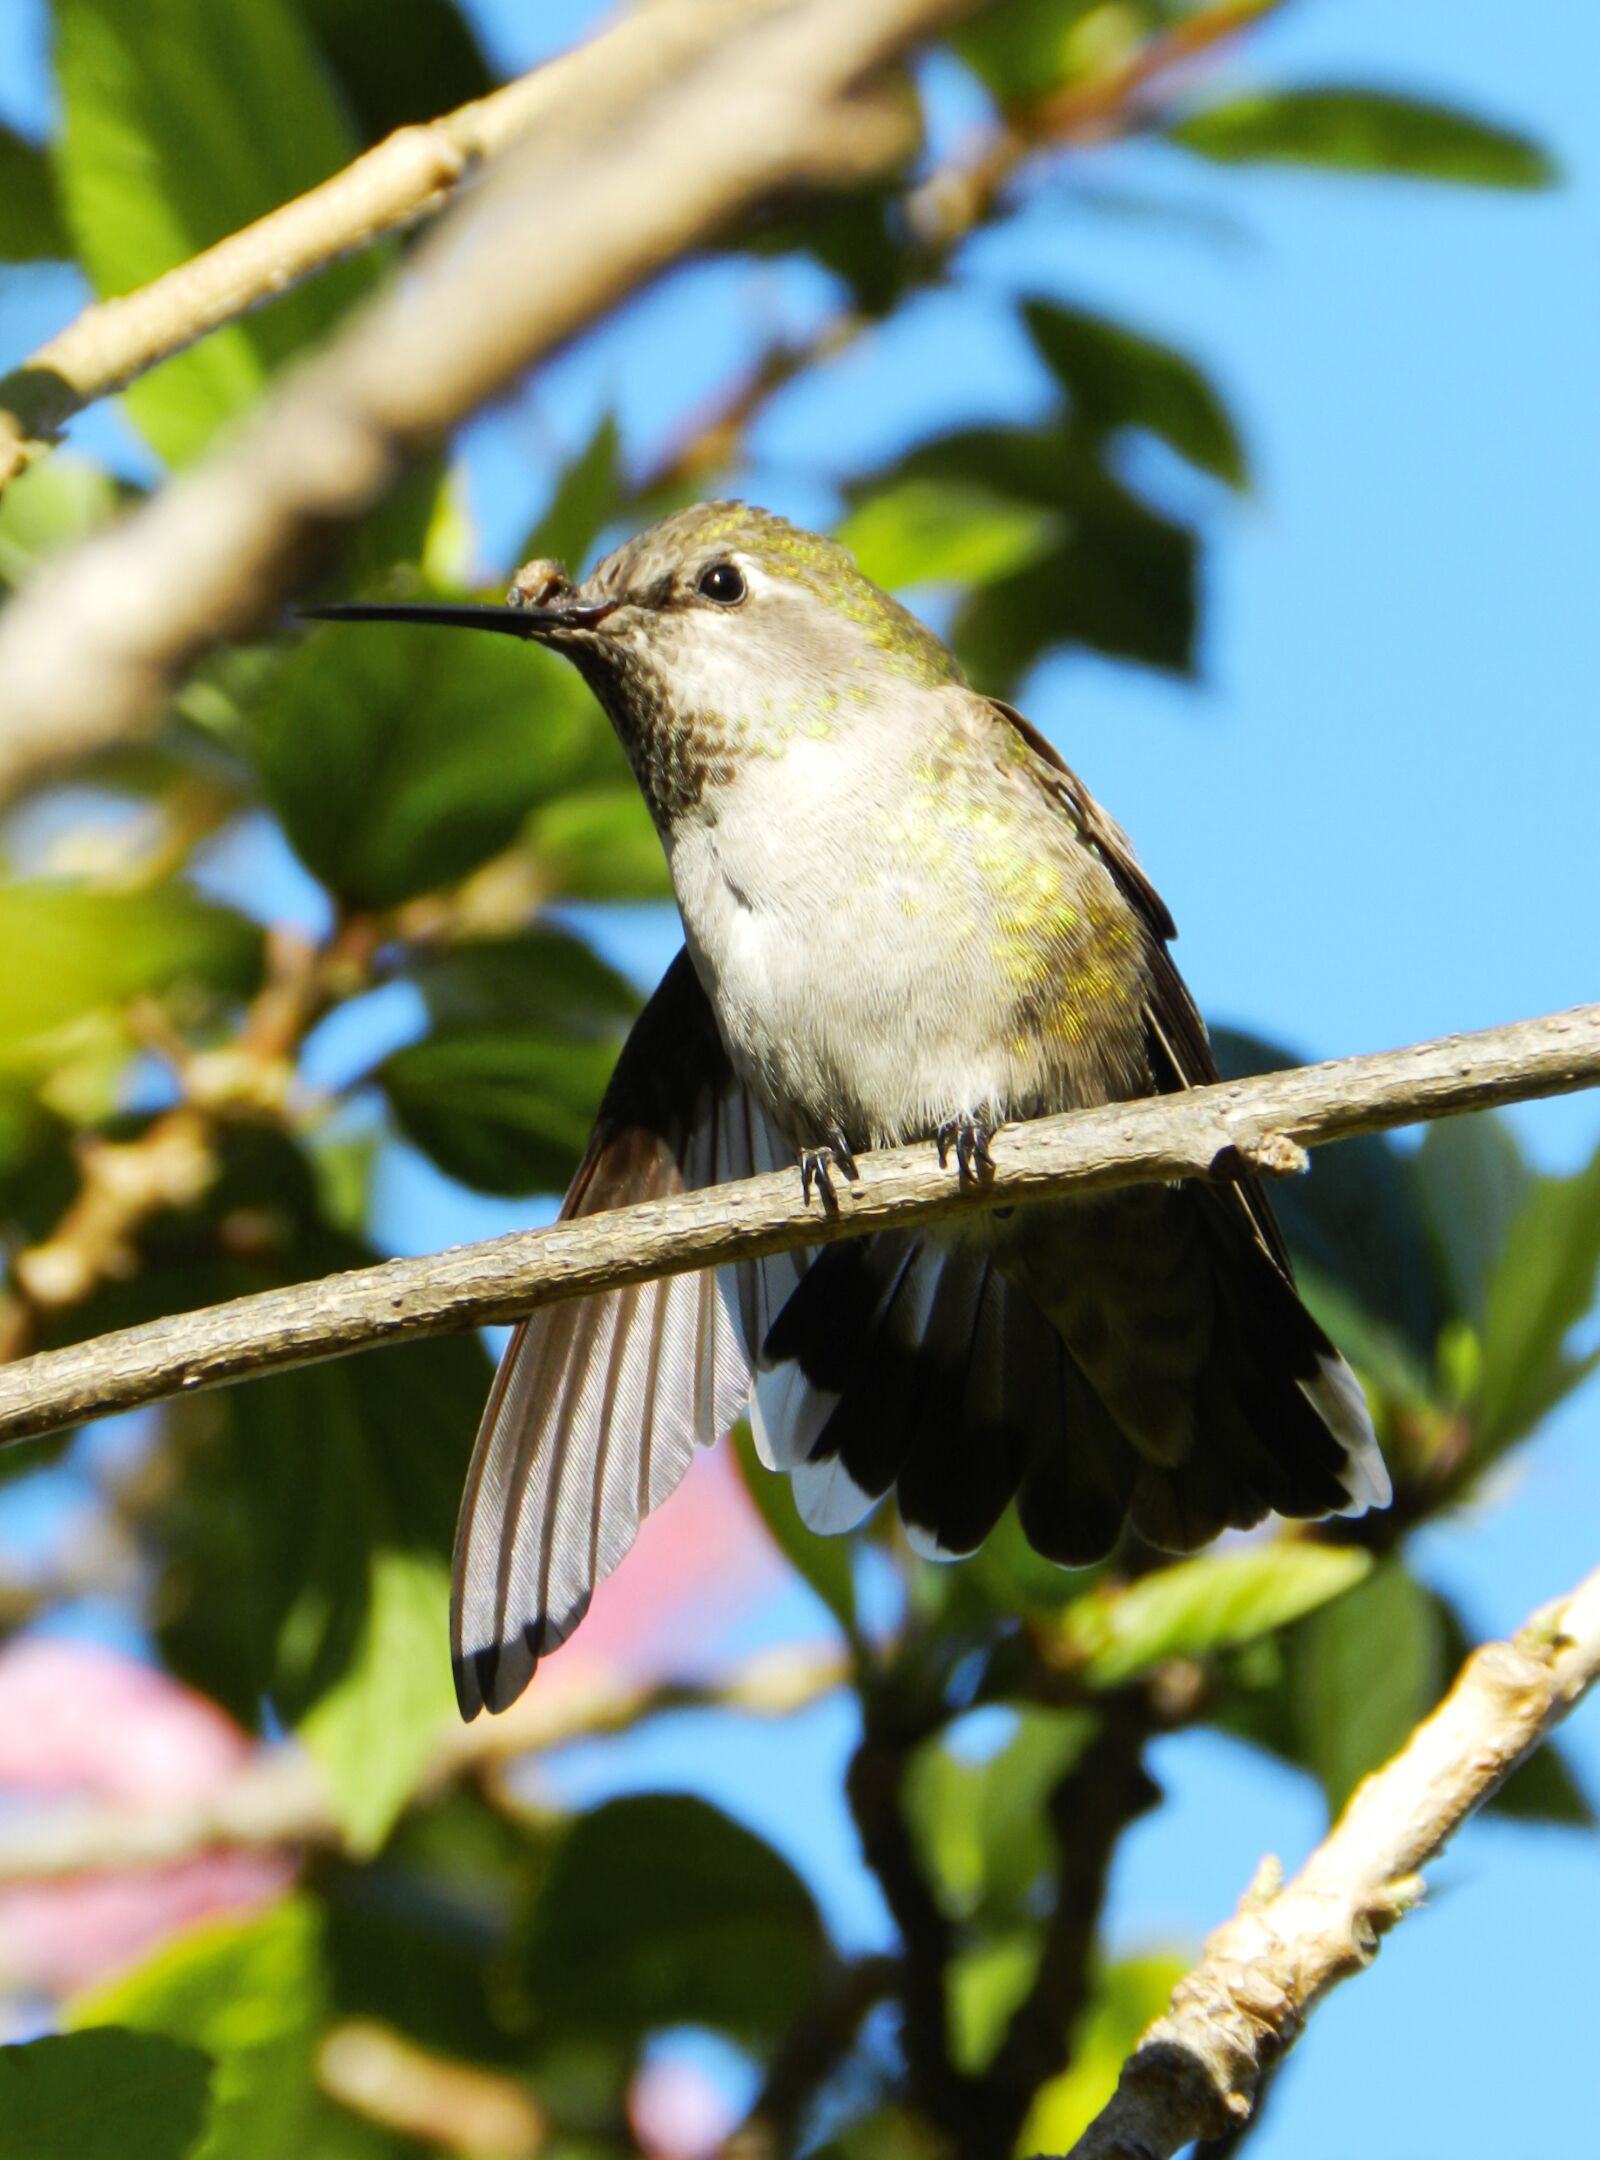 Nikon Coolpix P500 sample photo. Bird, hummingbird, nature photography